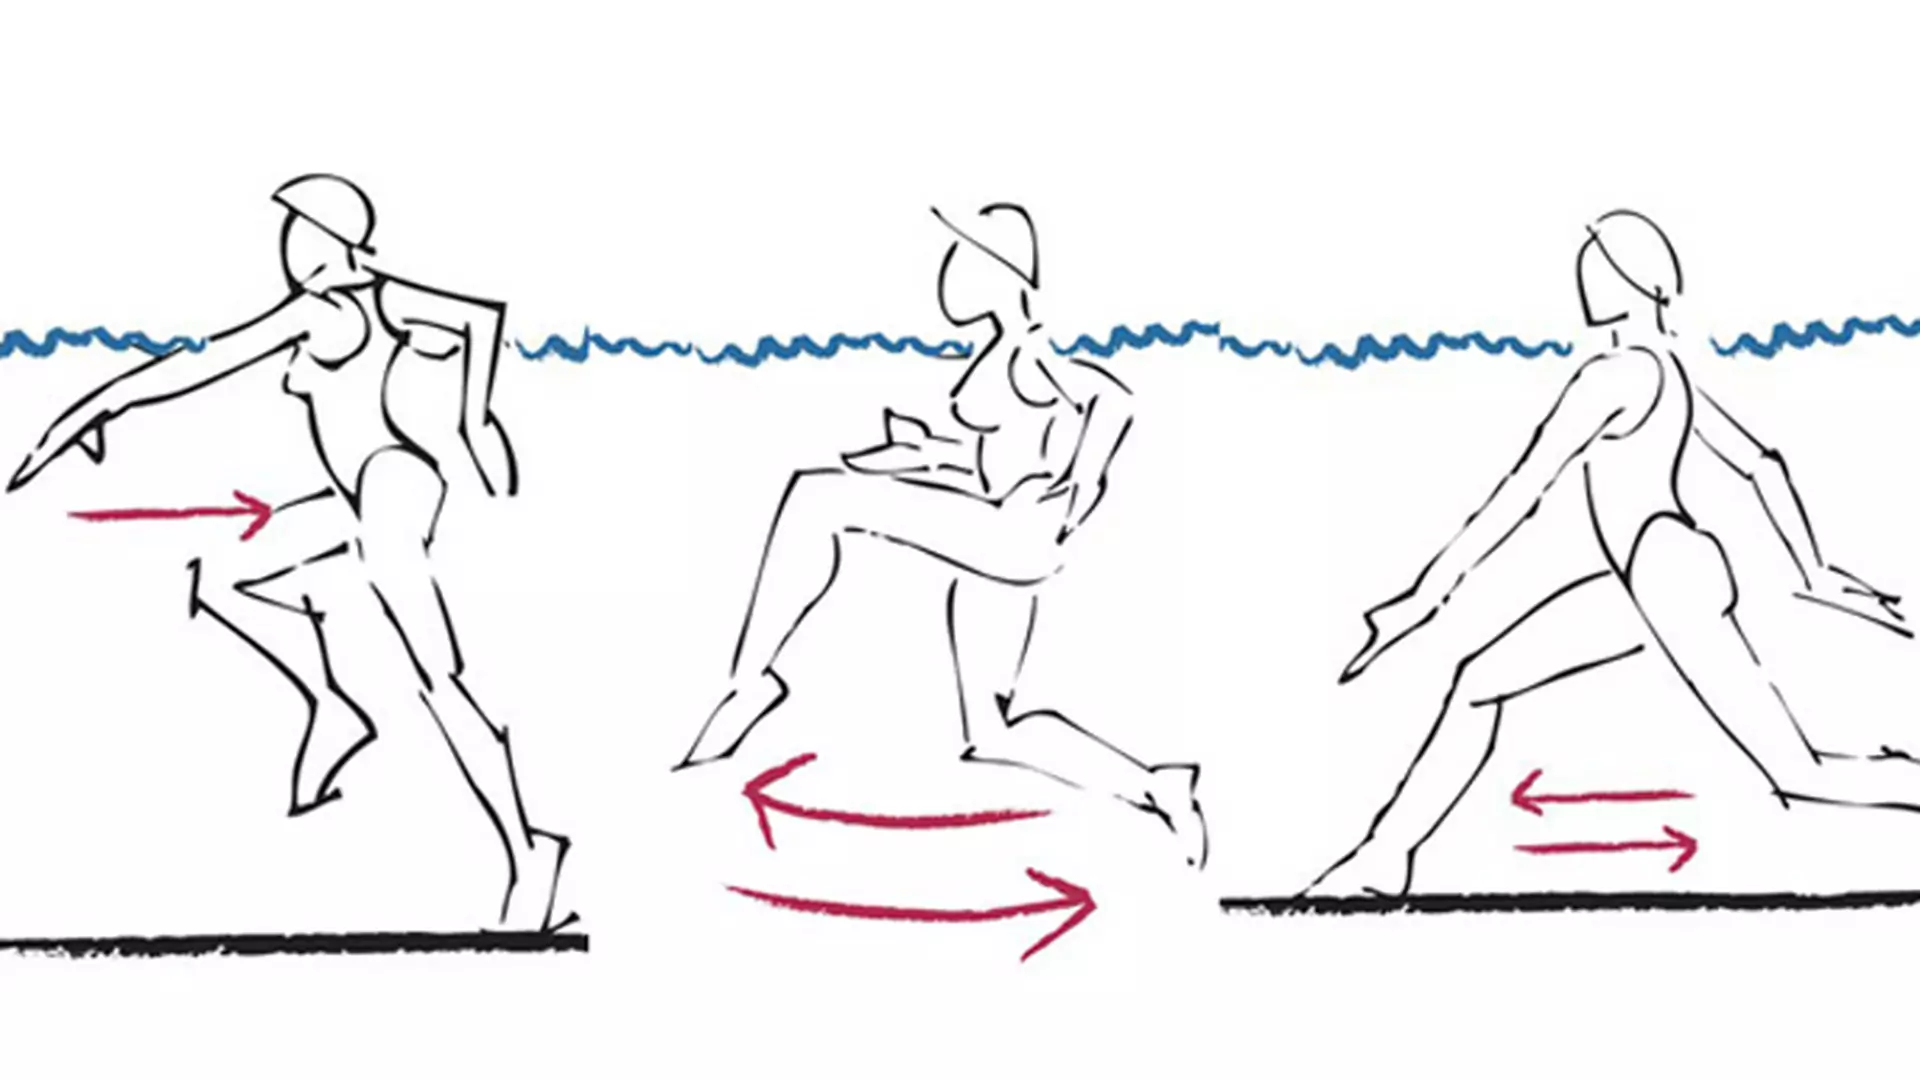 Aqua aerobic: ćwiczenia, które możesz wykonywać w basenie i jeziorze RYSUNKI